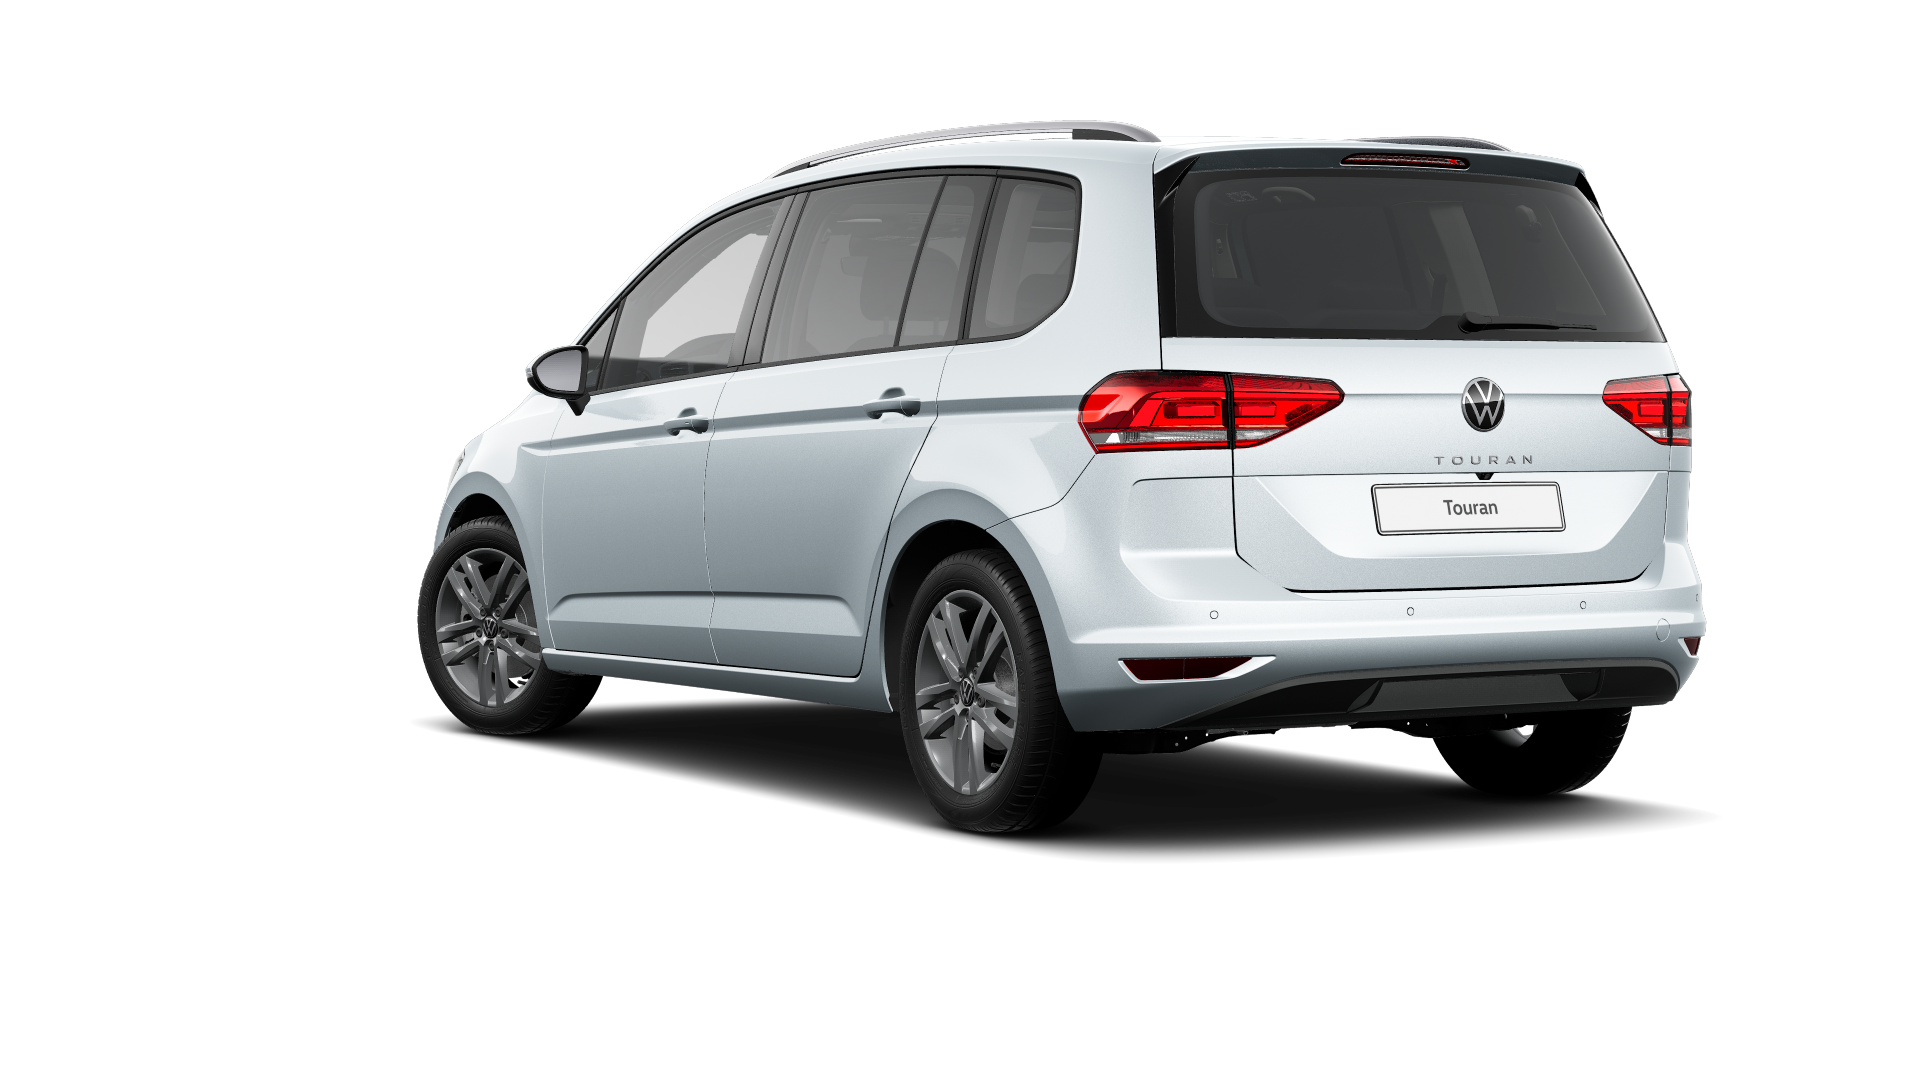 Volkswagen Touran ``Más`` 2.0 TDI 90 kW (122 CV)